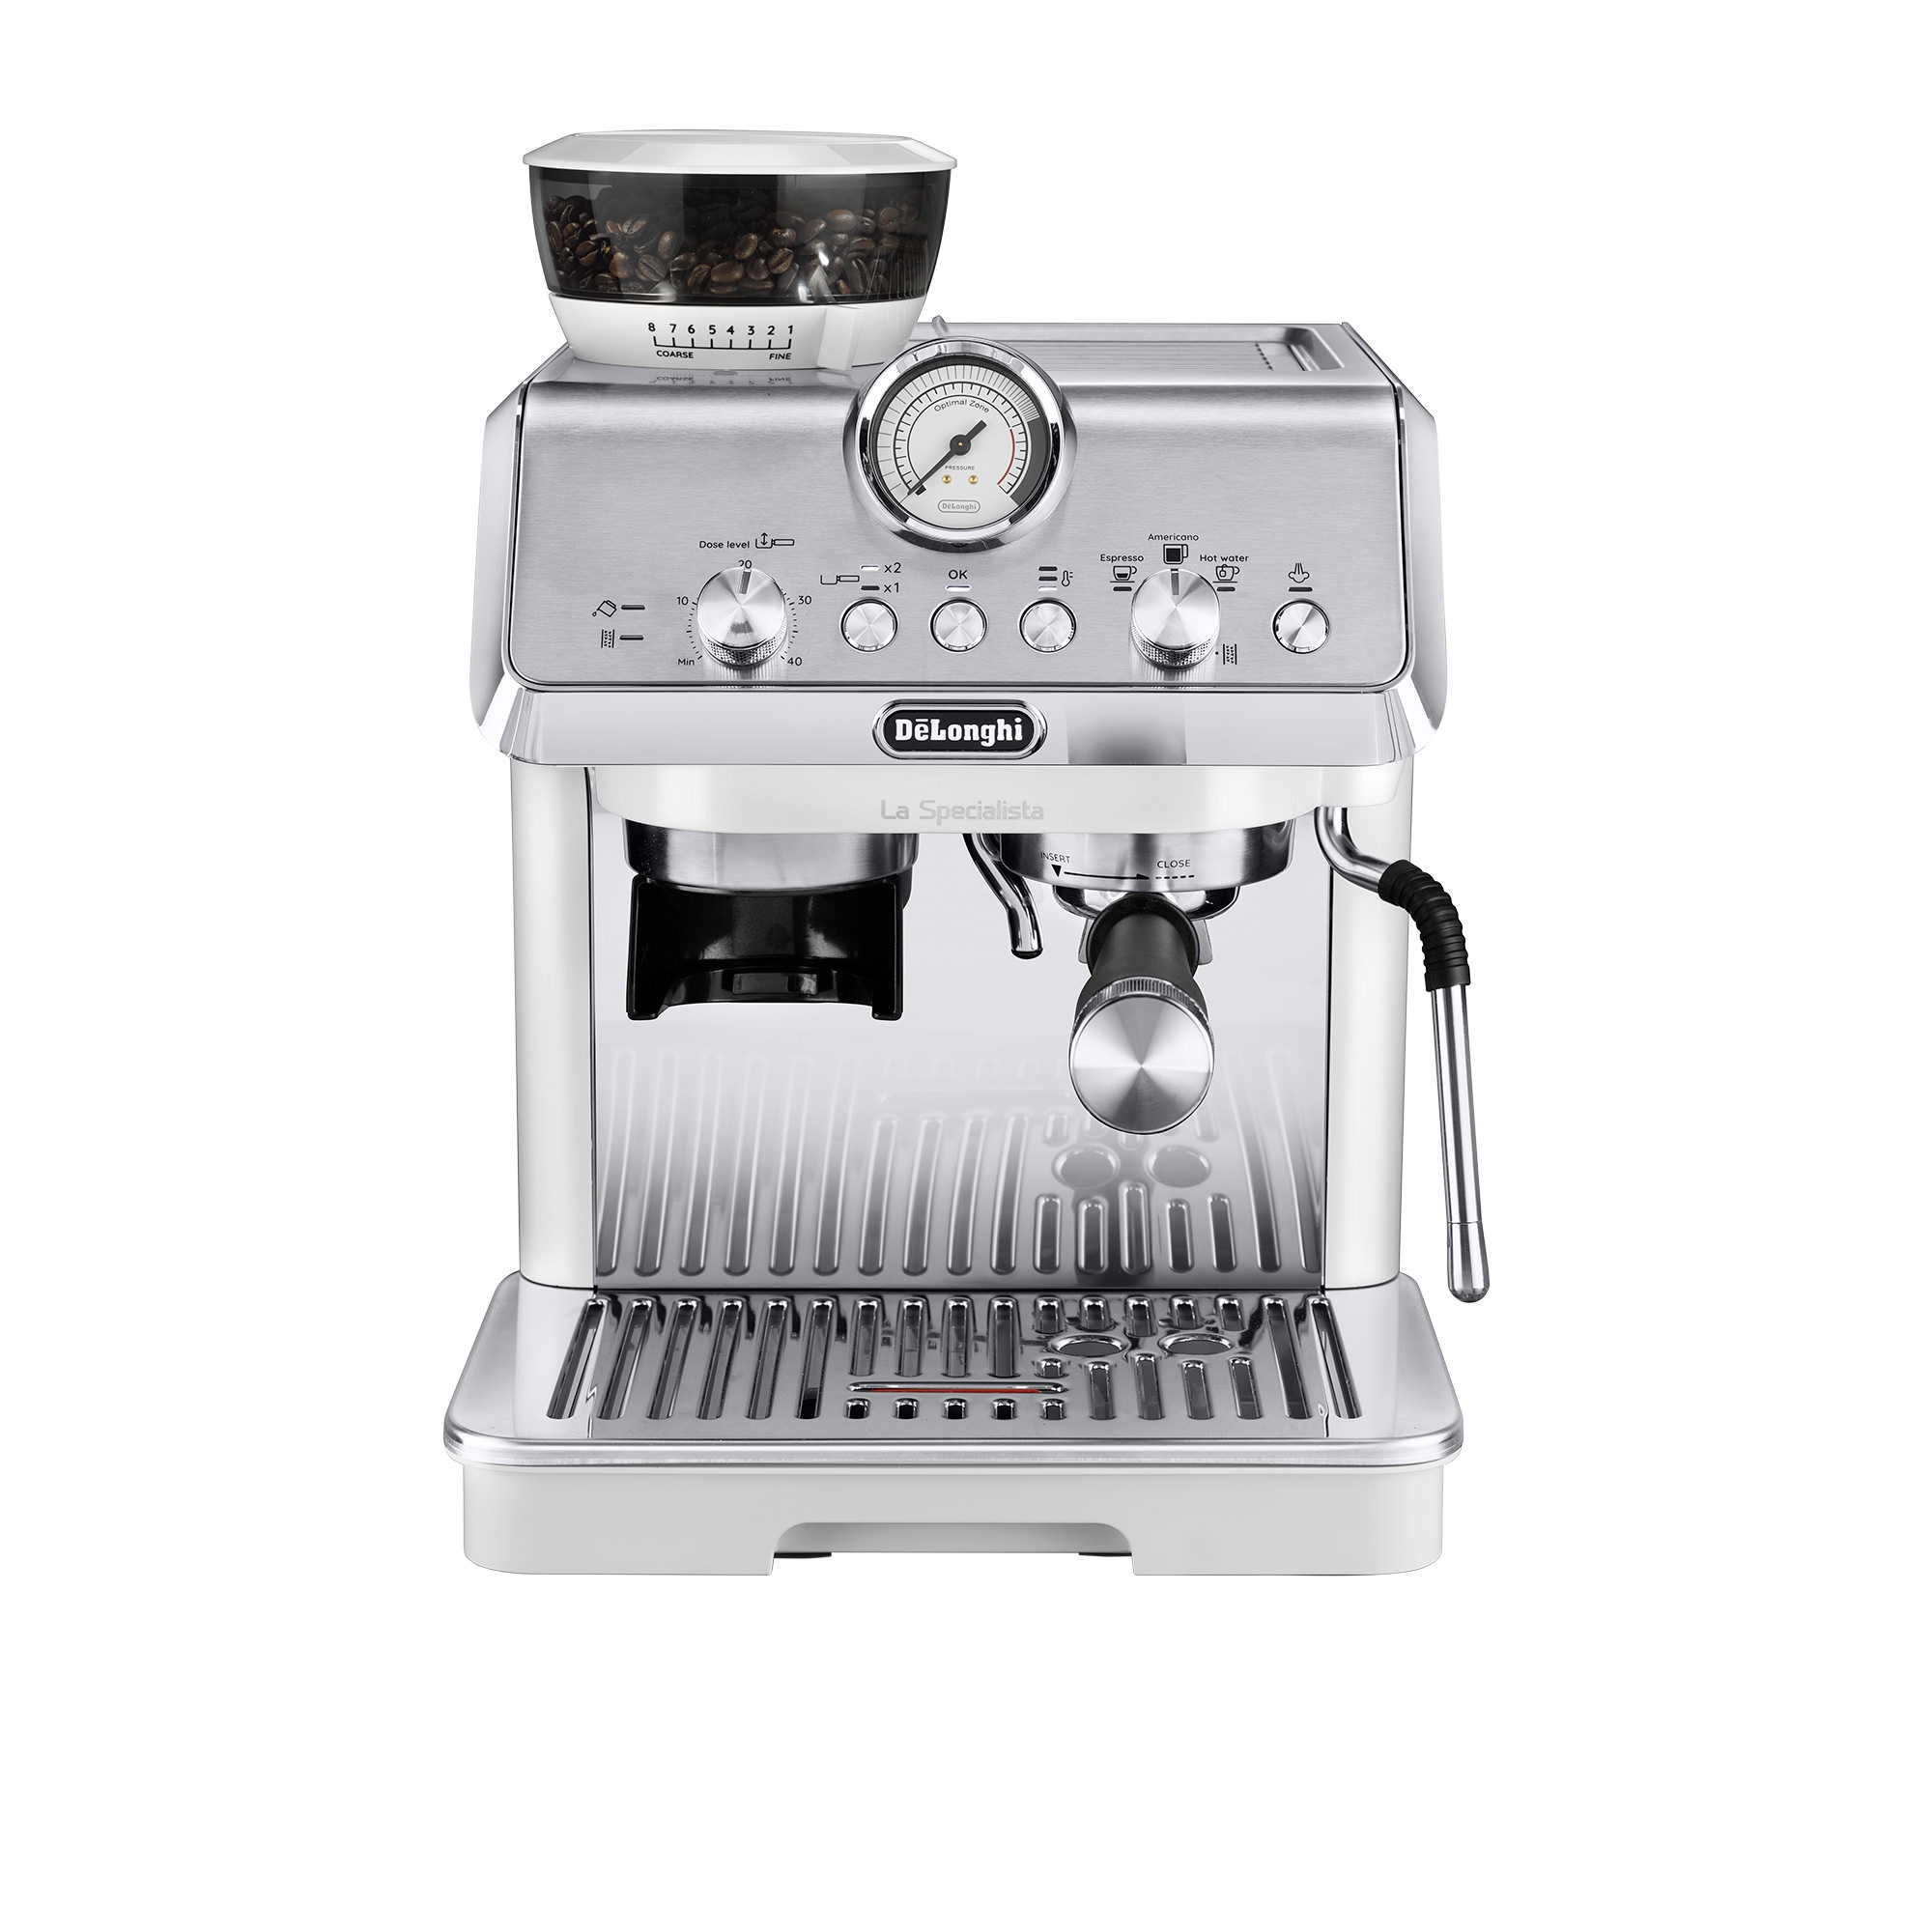 DeLonghi La Specialista Arte EC9155W Espresso Coffee Machine White Image 1